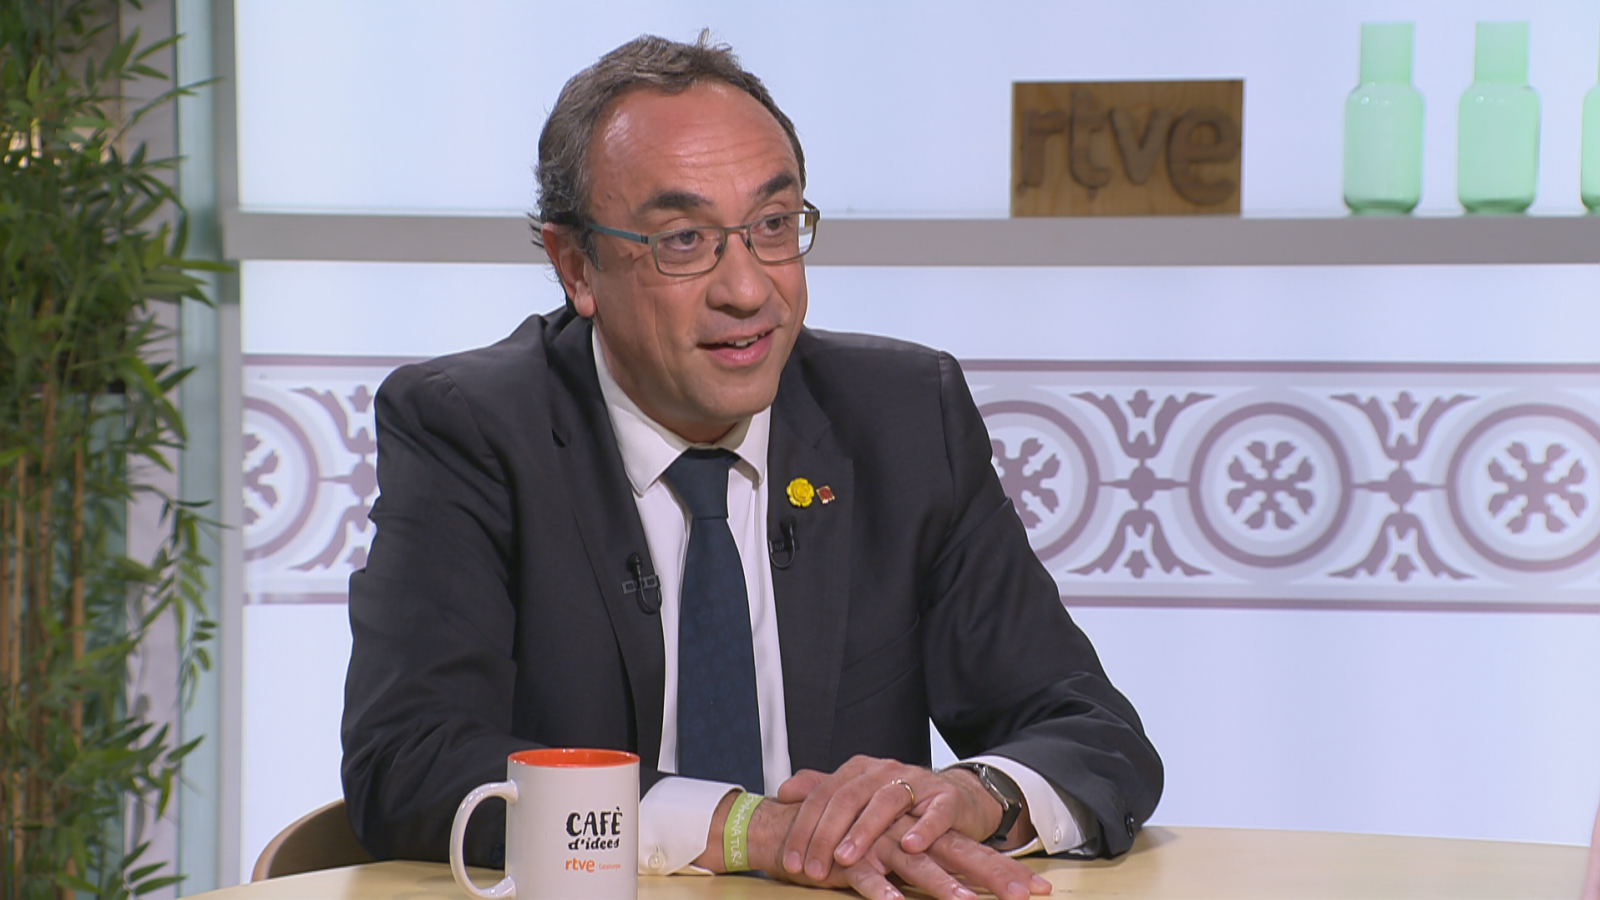 Cafè d'idees - Josep Rull: "No puc forçar ningú a presentar candidatura"